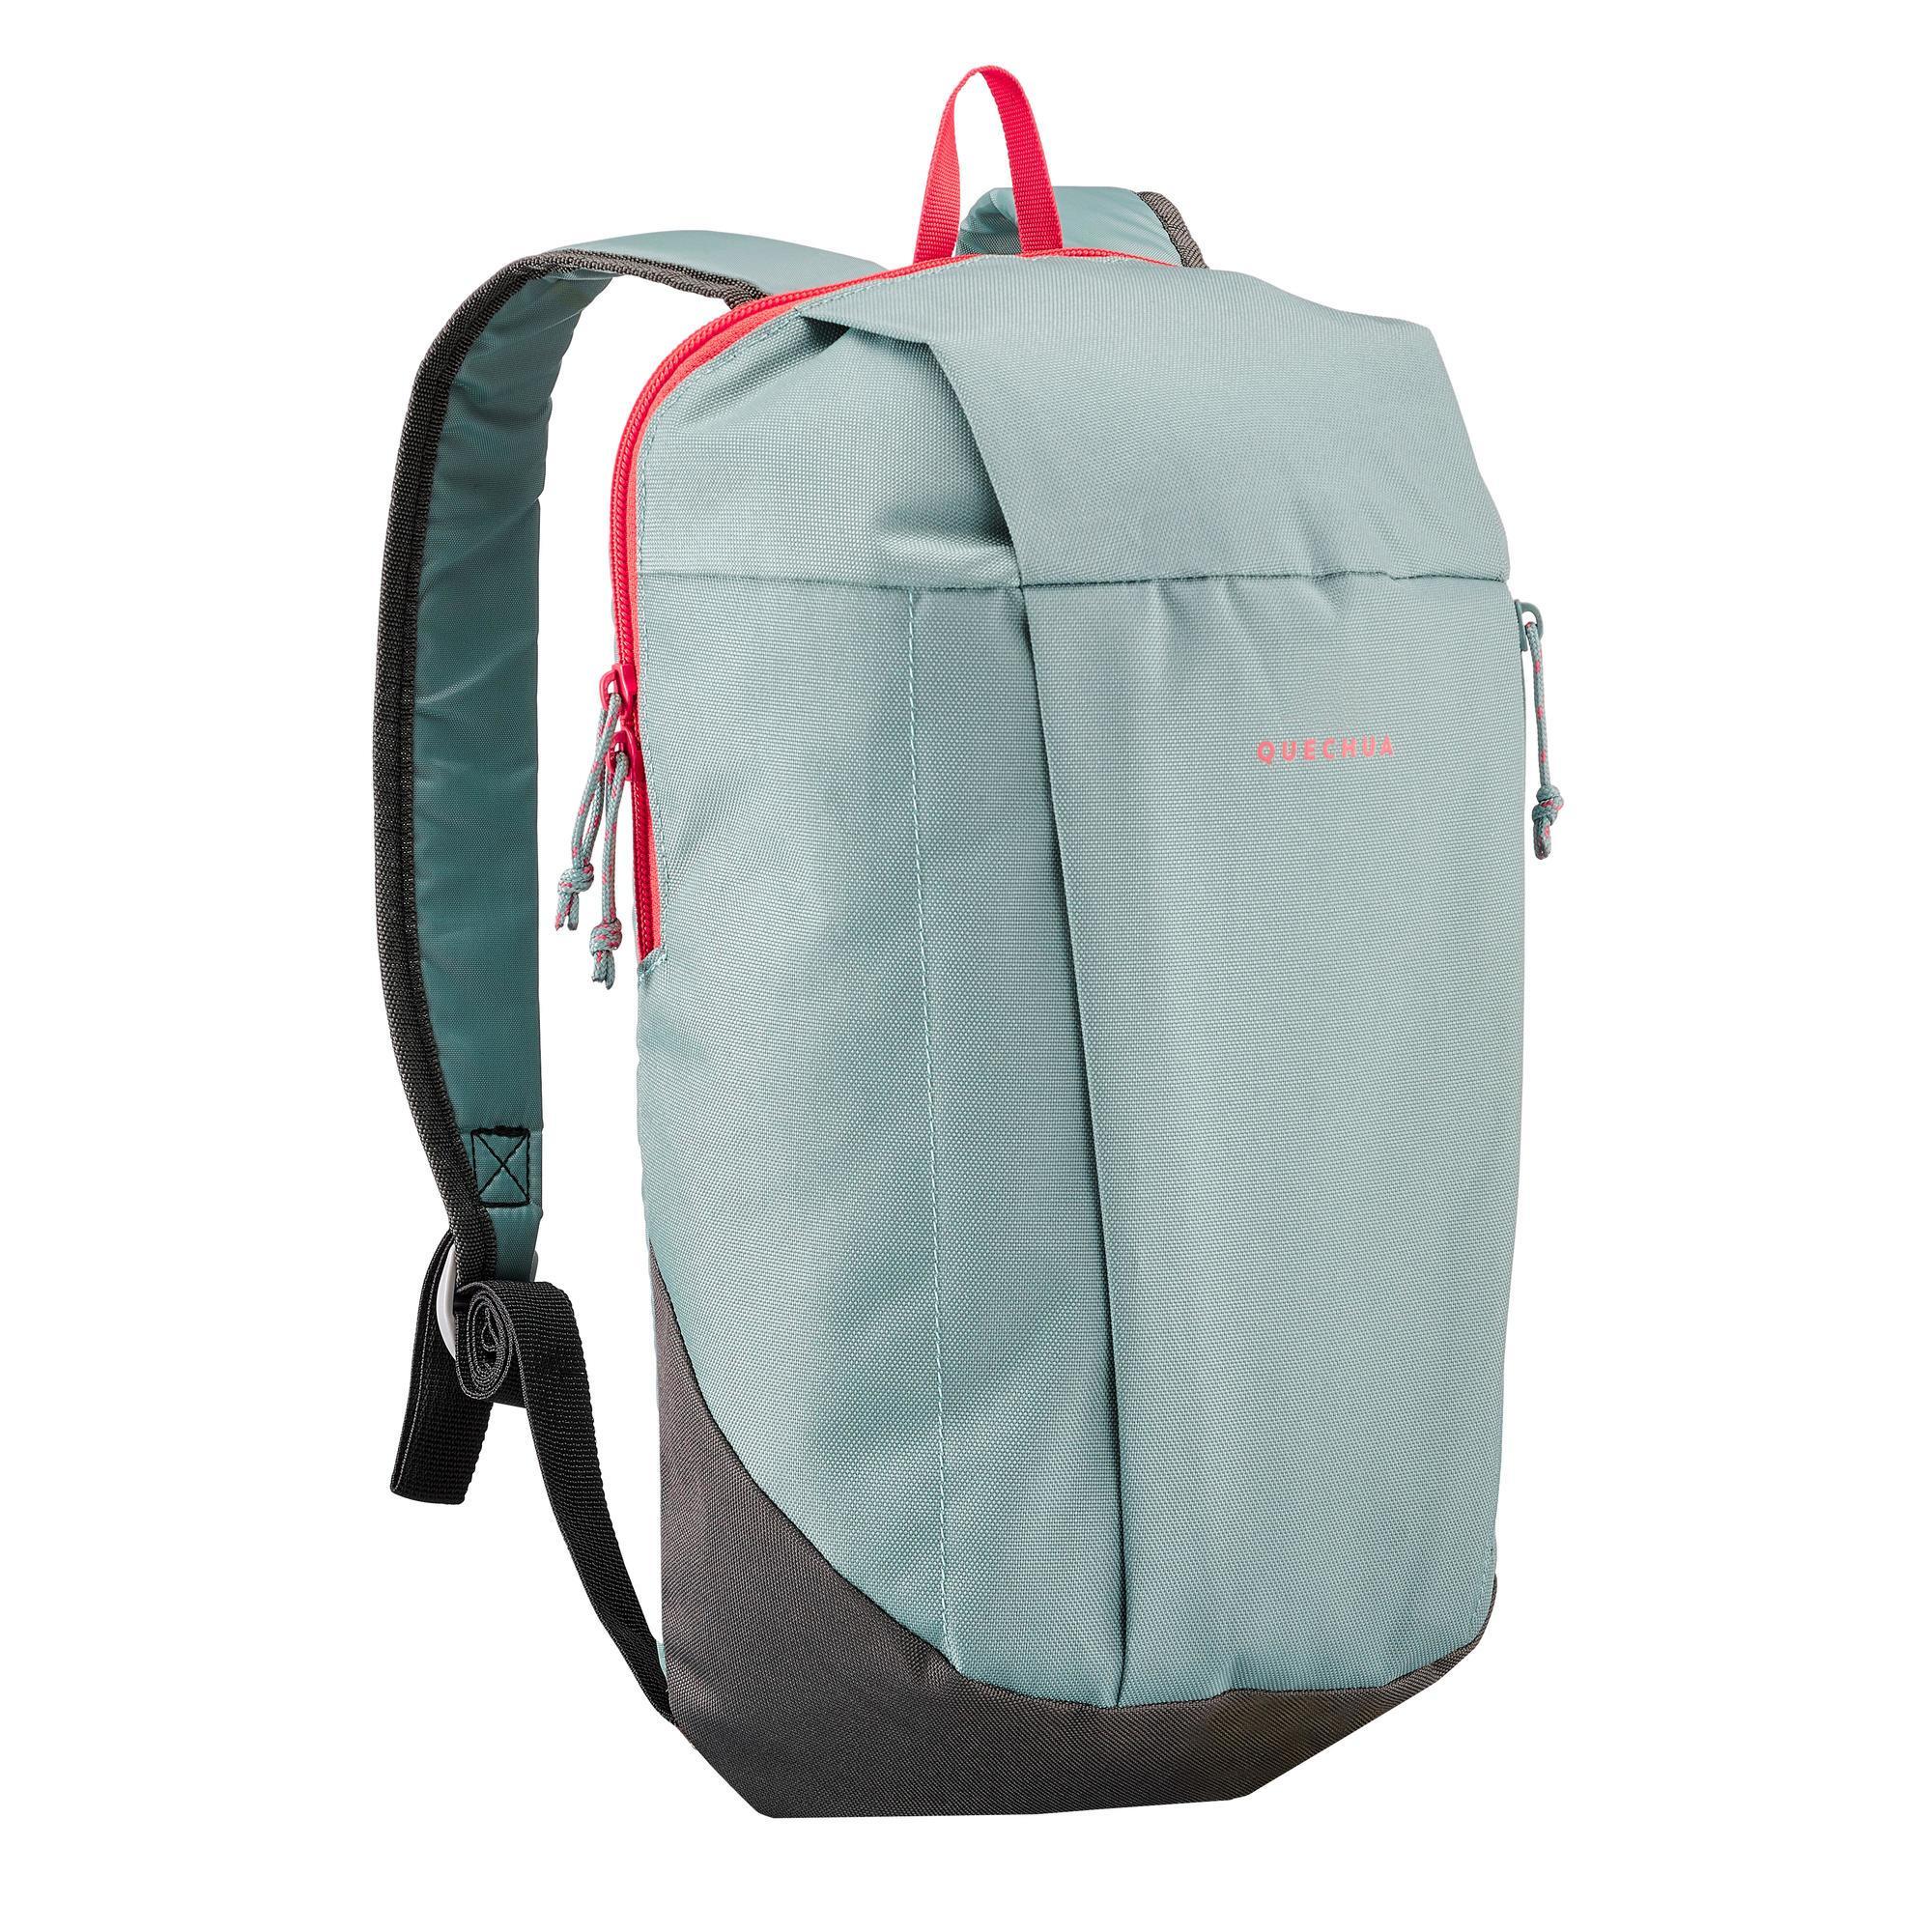 decathlon 10 liter backpack